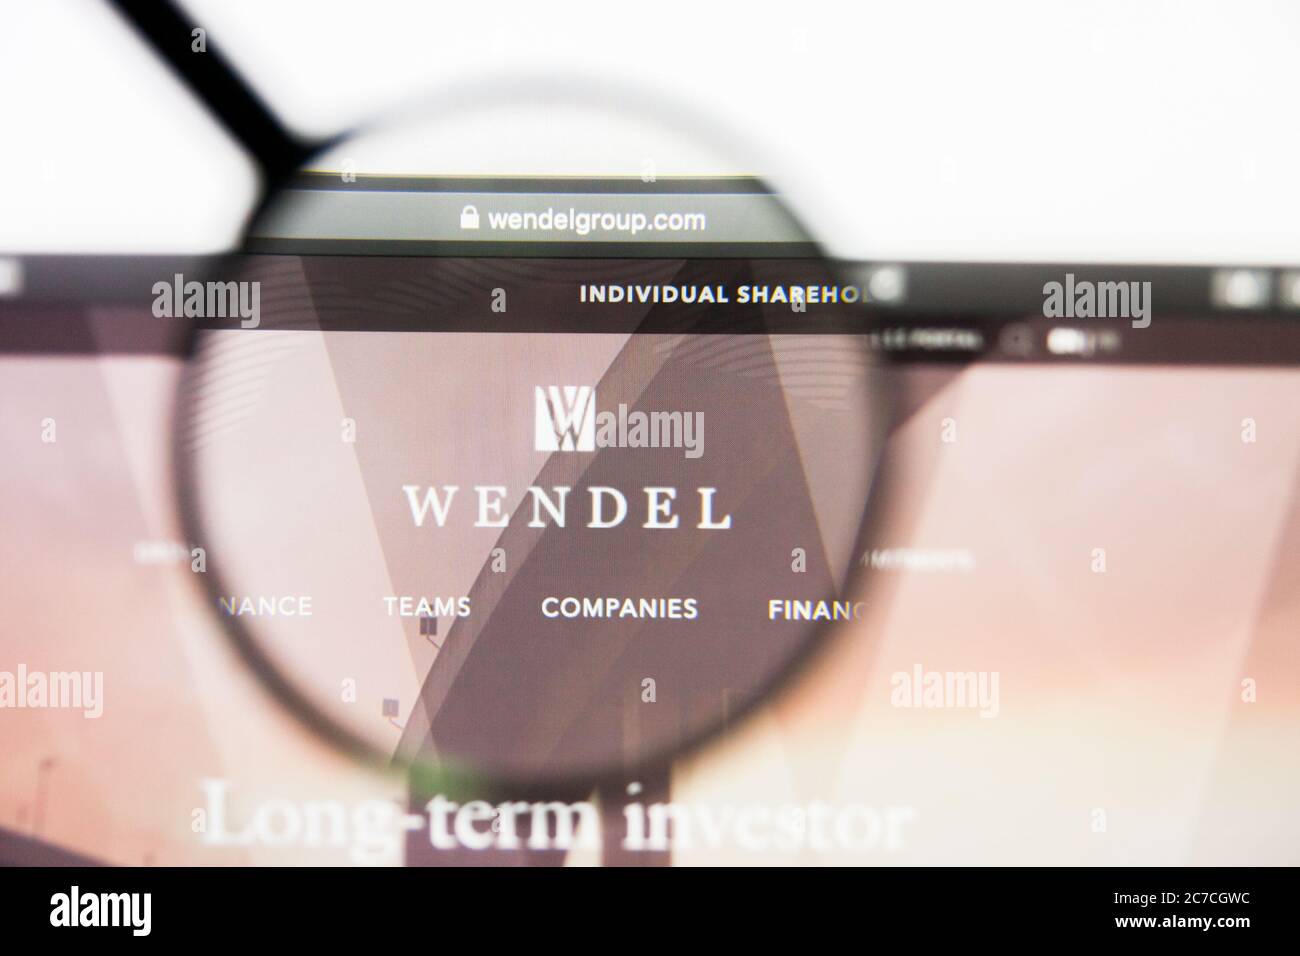 Los Angeles, Californie, Etats-Unis - 23 mars 2019 : éditorial illustratif de la page d'accueil du site Web de Wendel. Logo Wendel visible sur l'écran. Banque D'Images